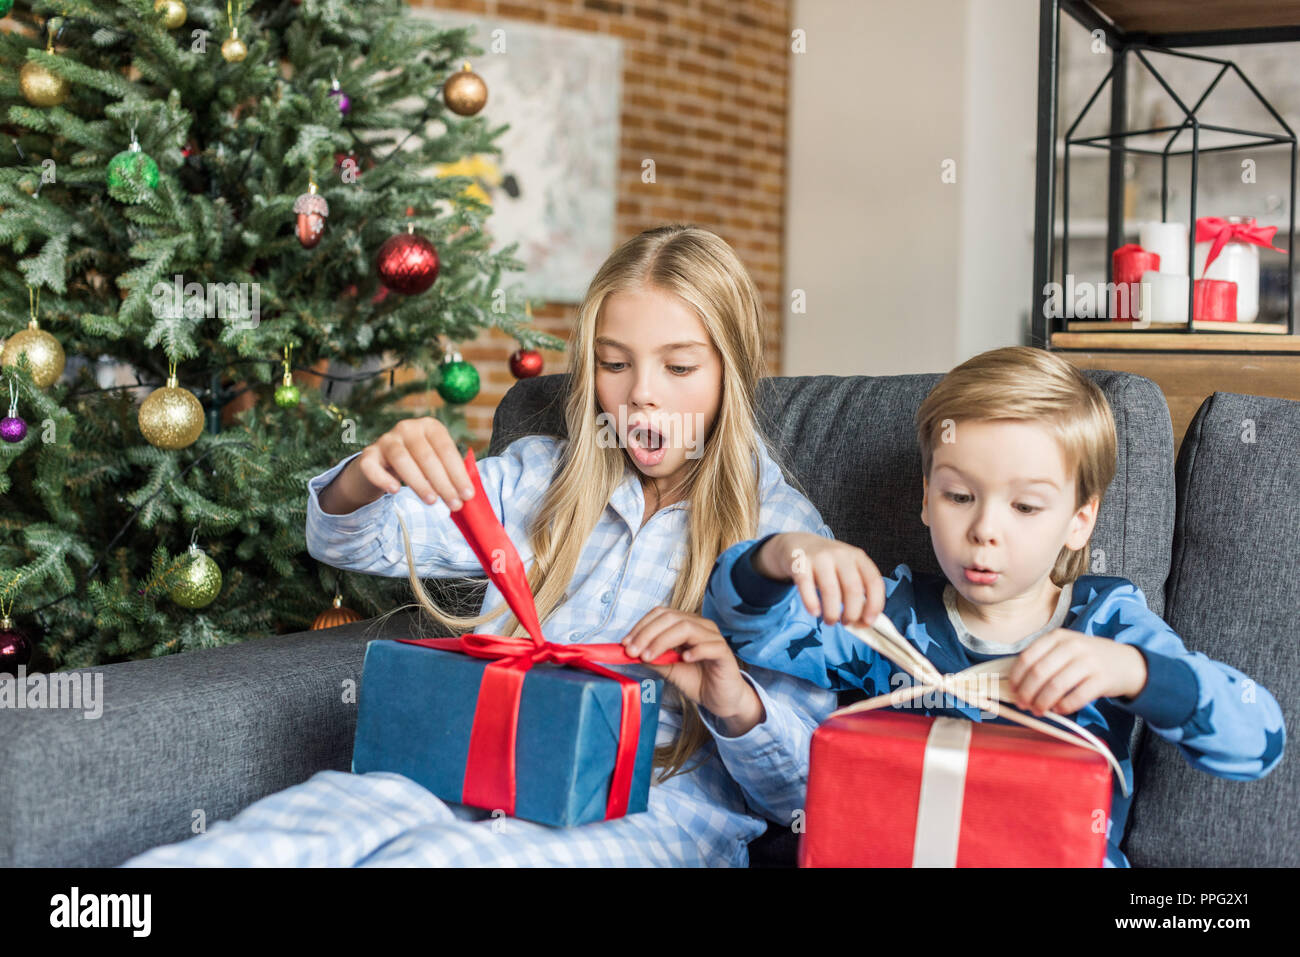 Apertura Regali Di Natale.Sorpreso I Bambini In Pigiama Apertura Regali Di Natale Foto Stock Alamy